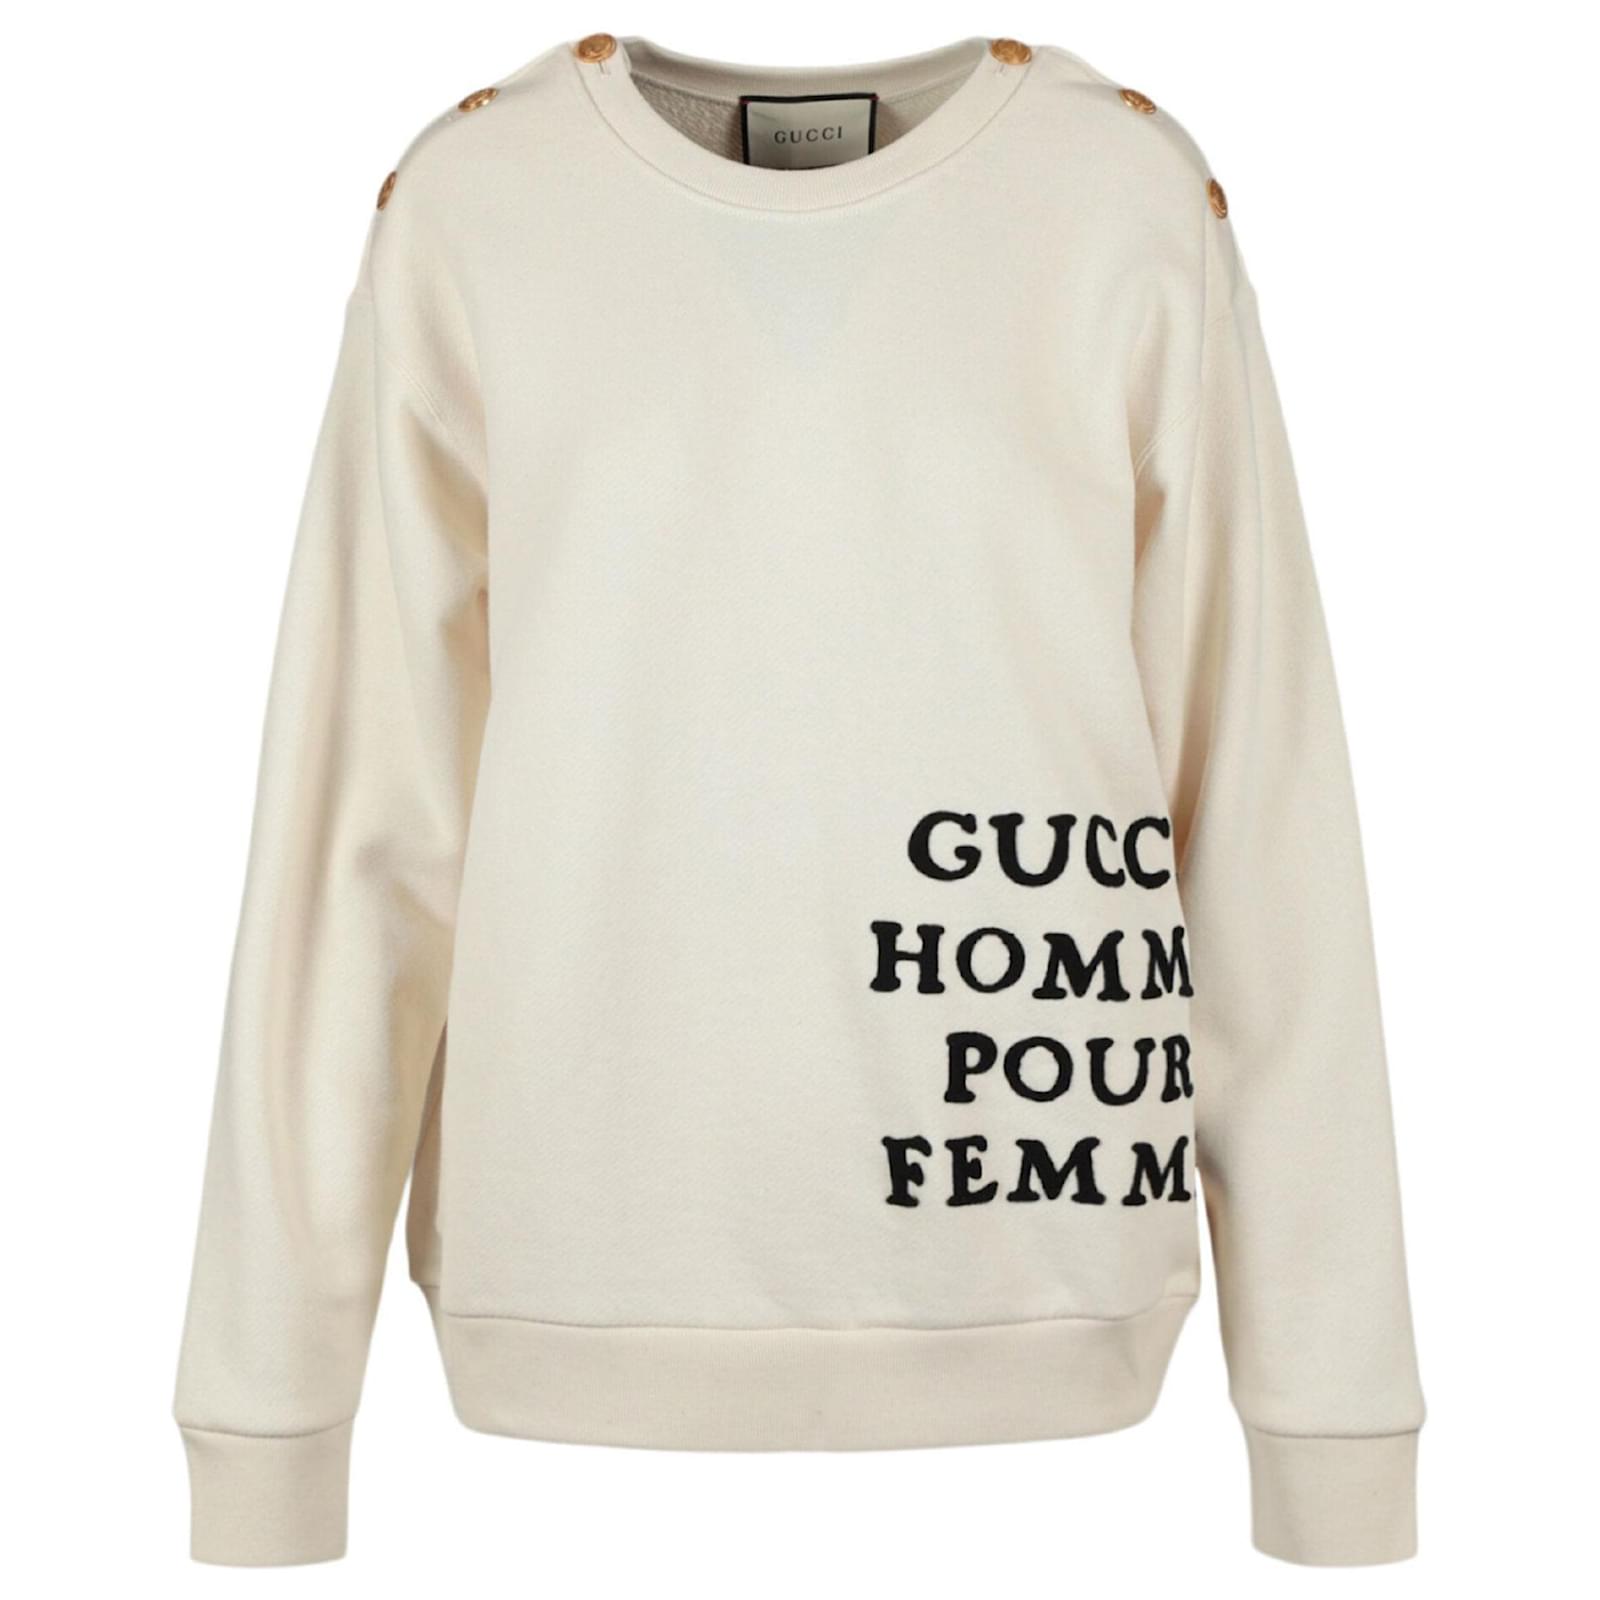 Gucci Homme Pour Femme Sweatshirt Multiple colors Cotton ref